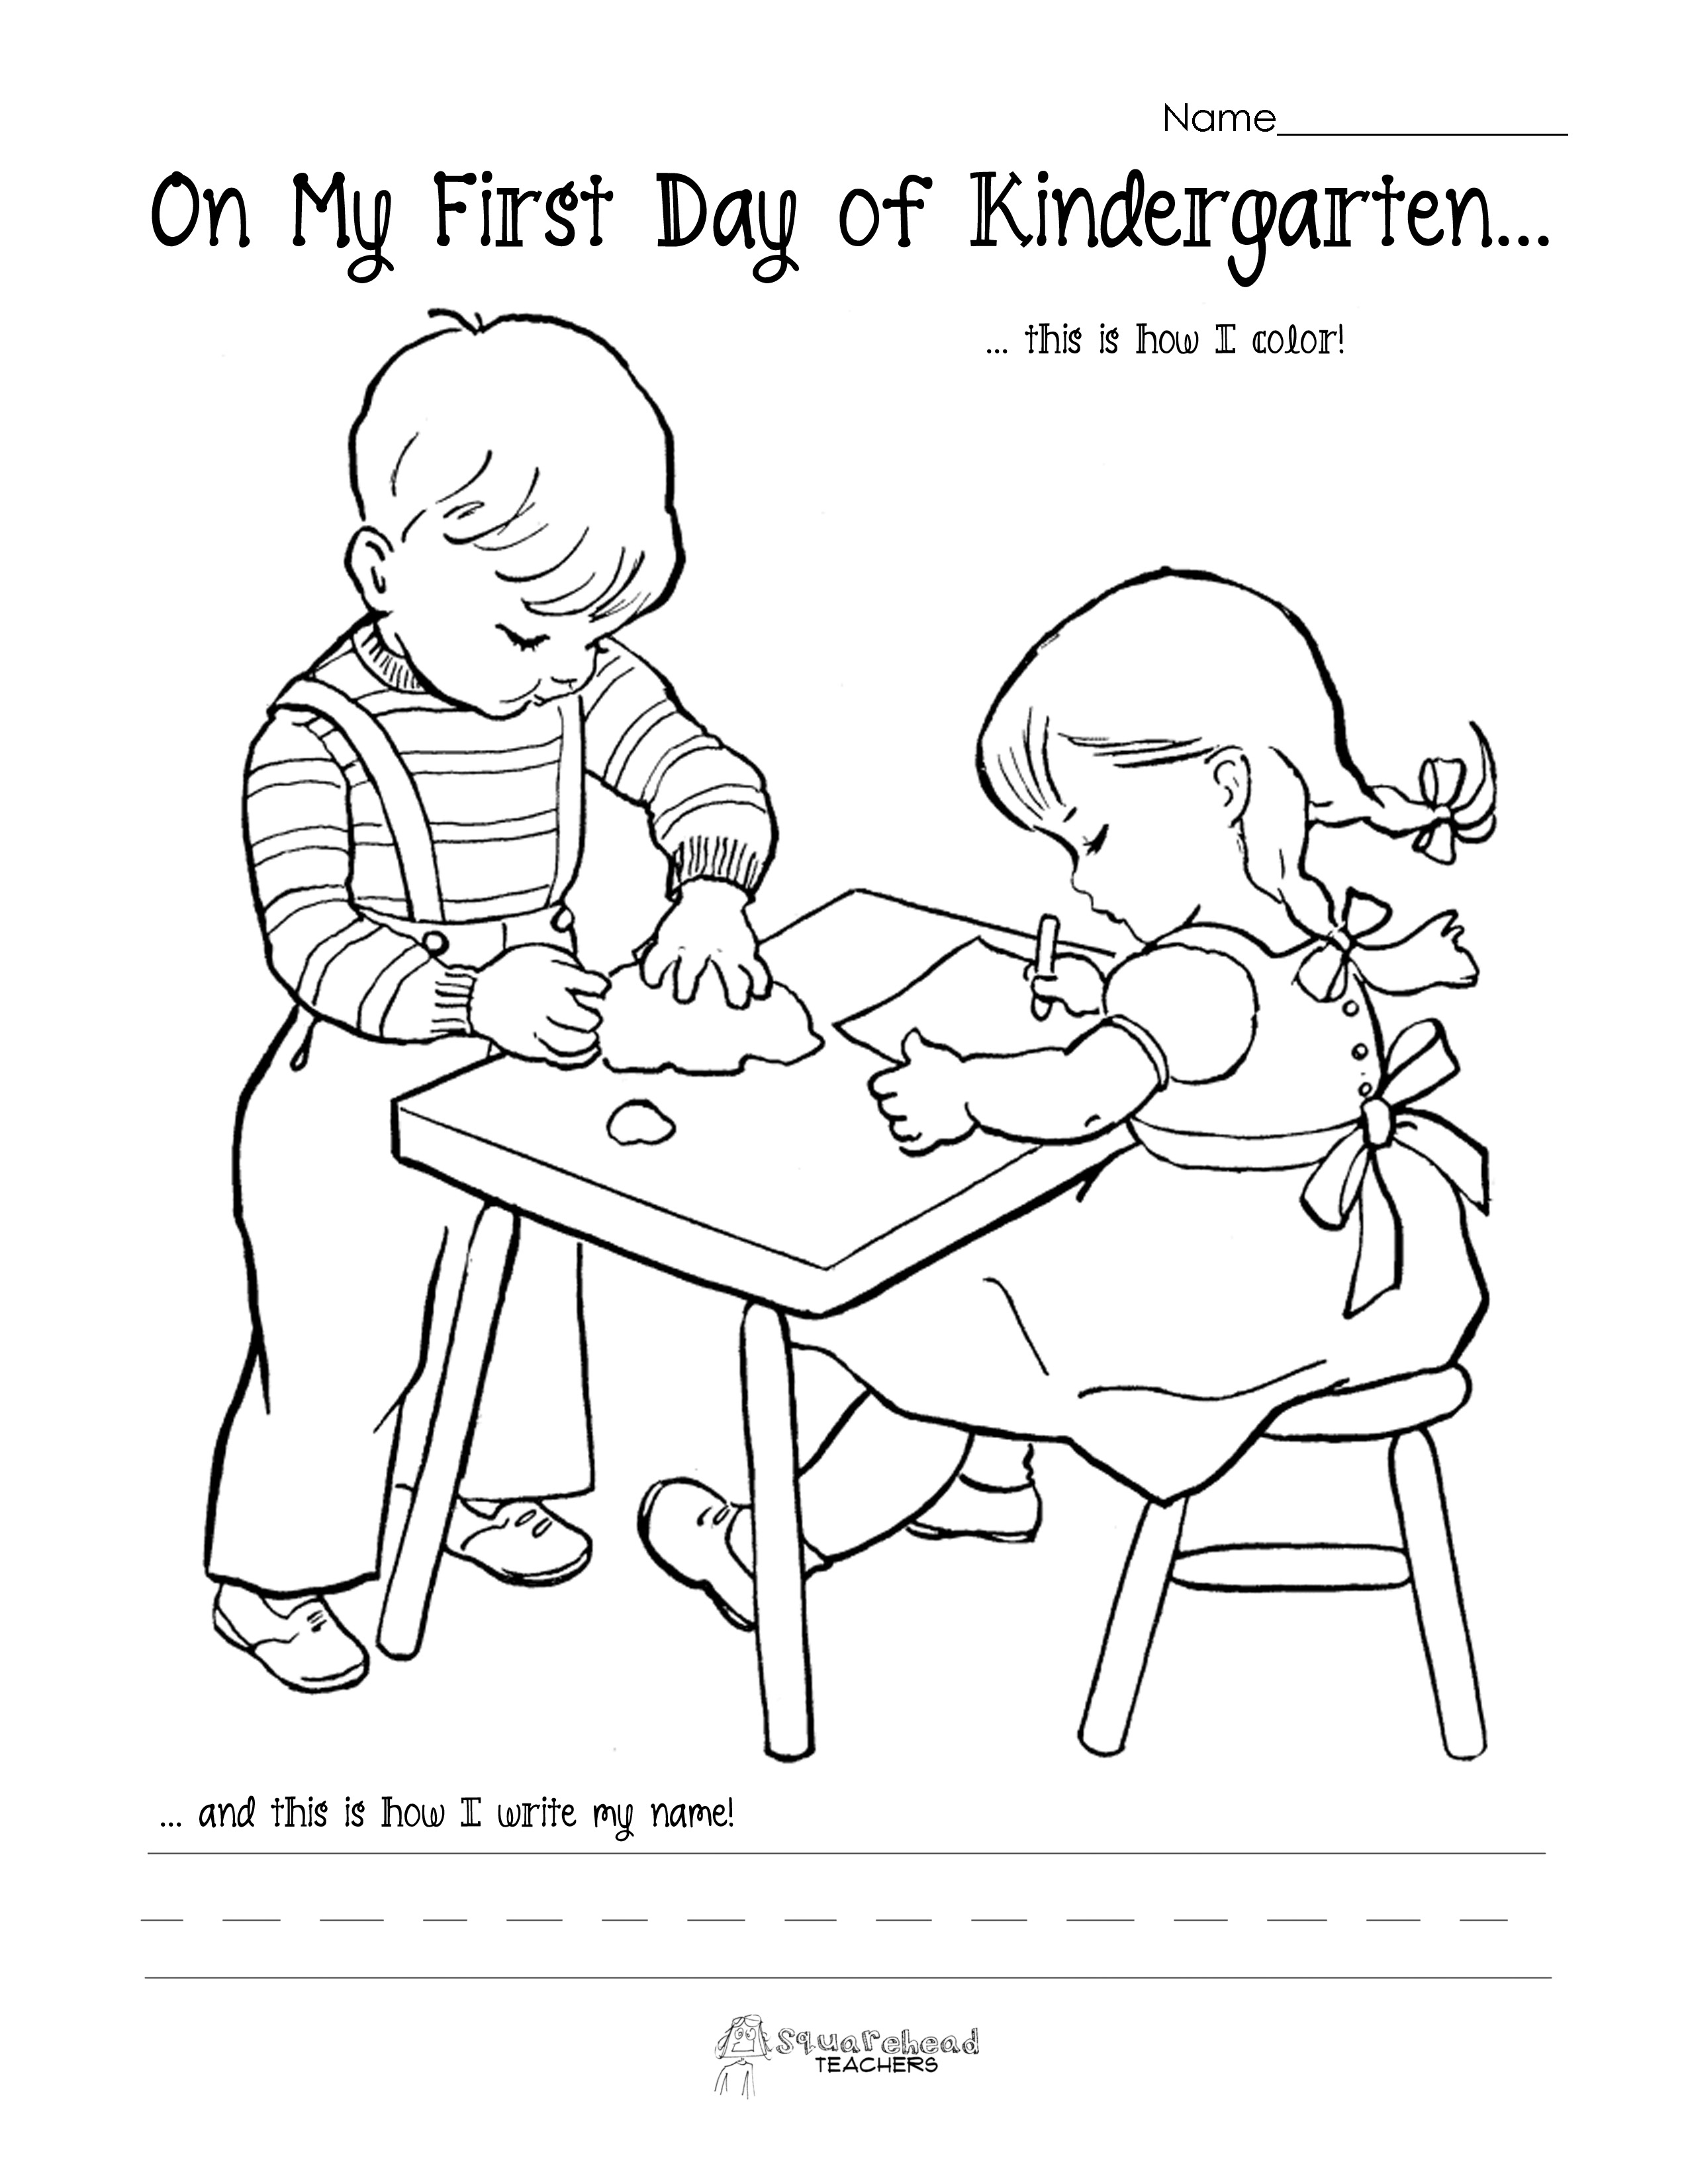 18 Best Images Of Fun Behavior Worksheets Printable Drug Abuse Worksheets For Kids Student